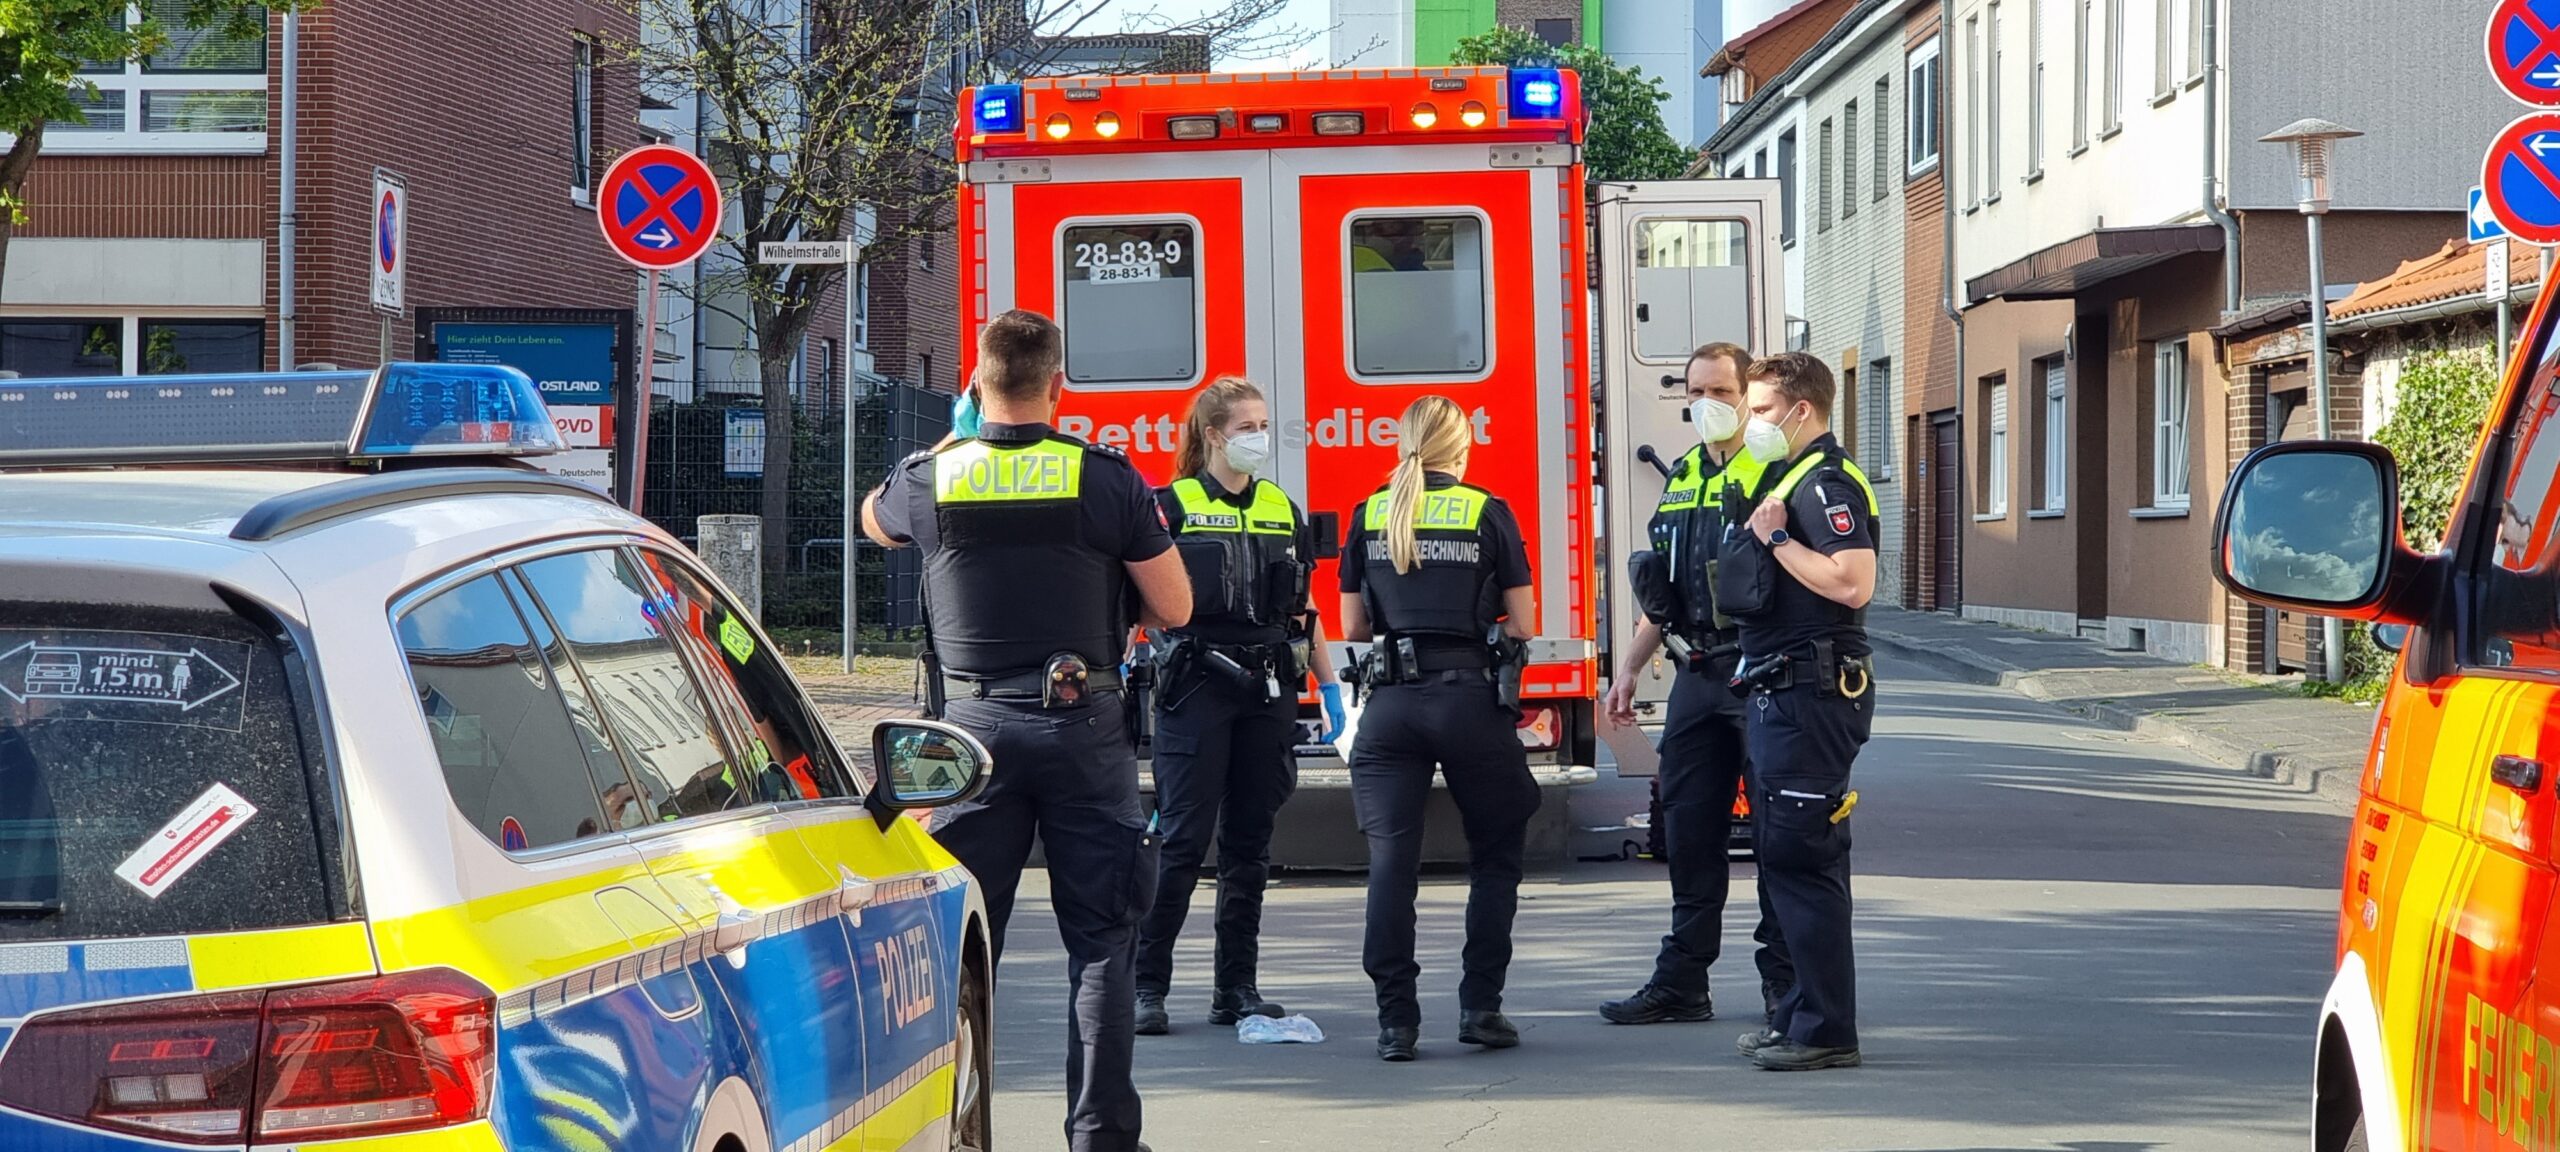 Polizisten am abgesperrten Tatort in Burgdorf bei Hannover. Hier wurde eine 35-Jährige erstochen.